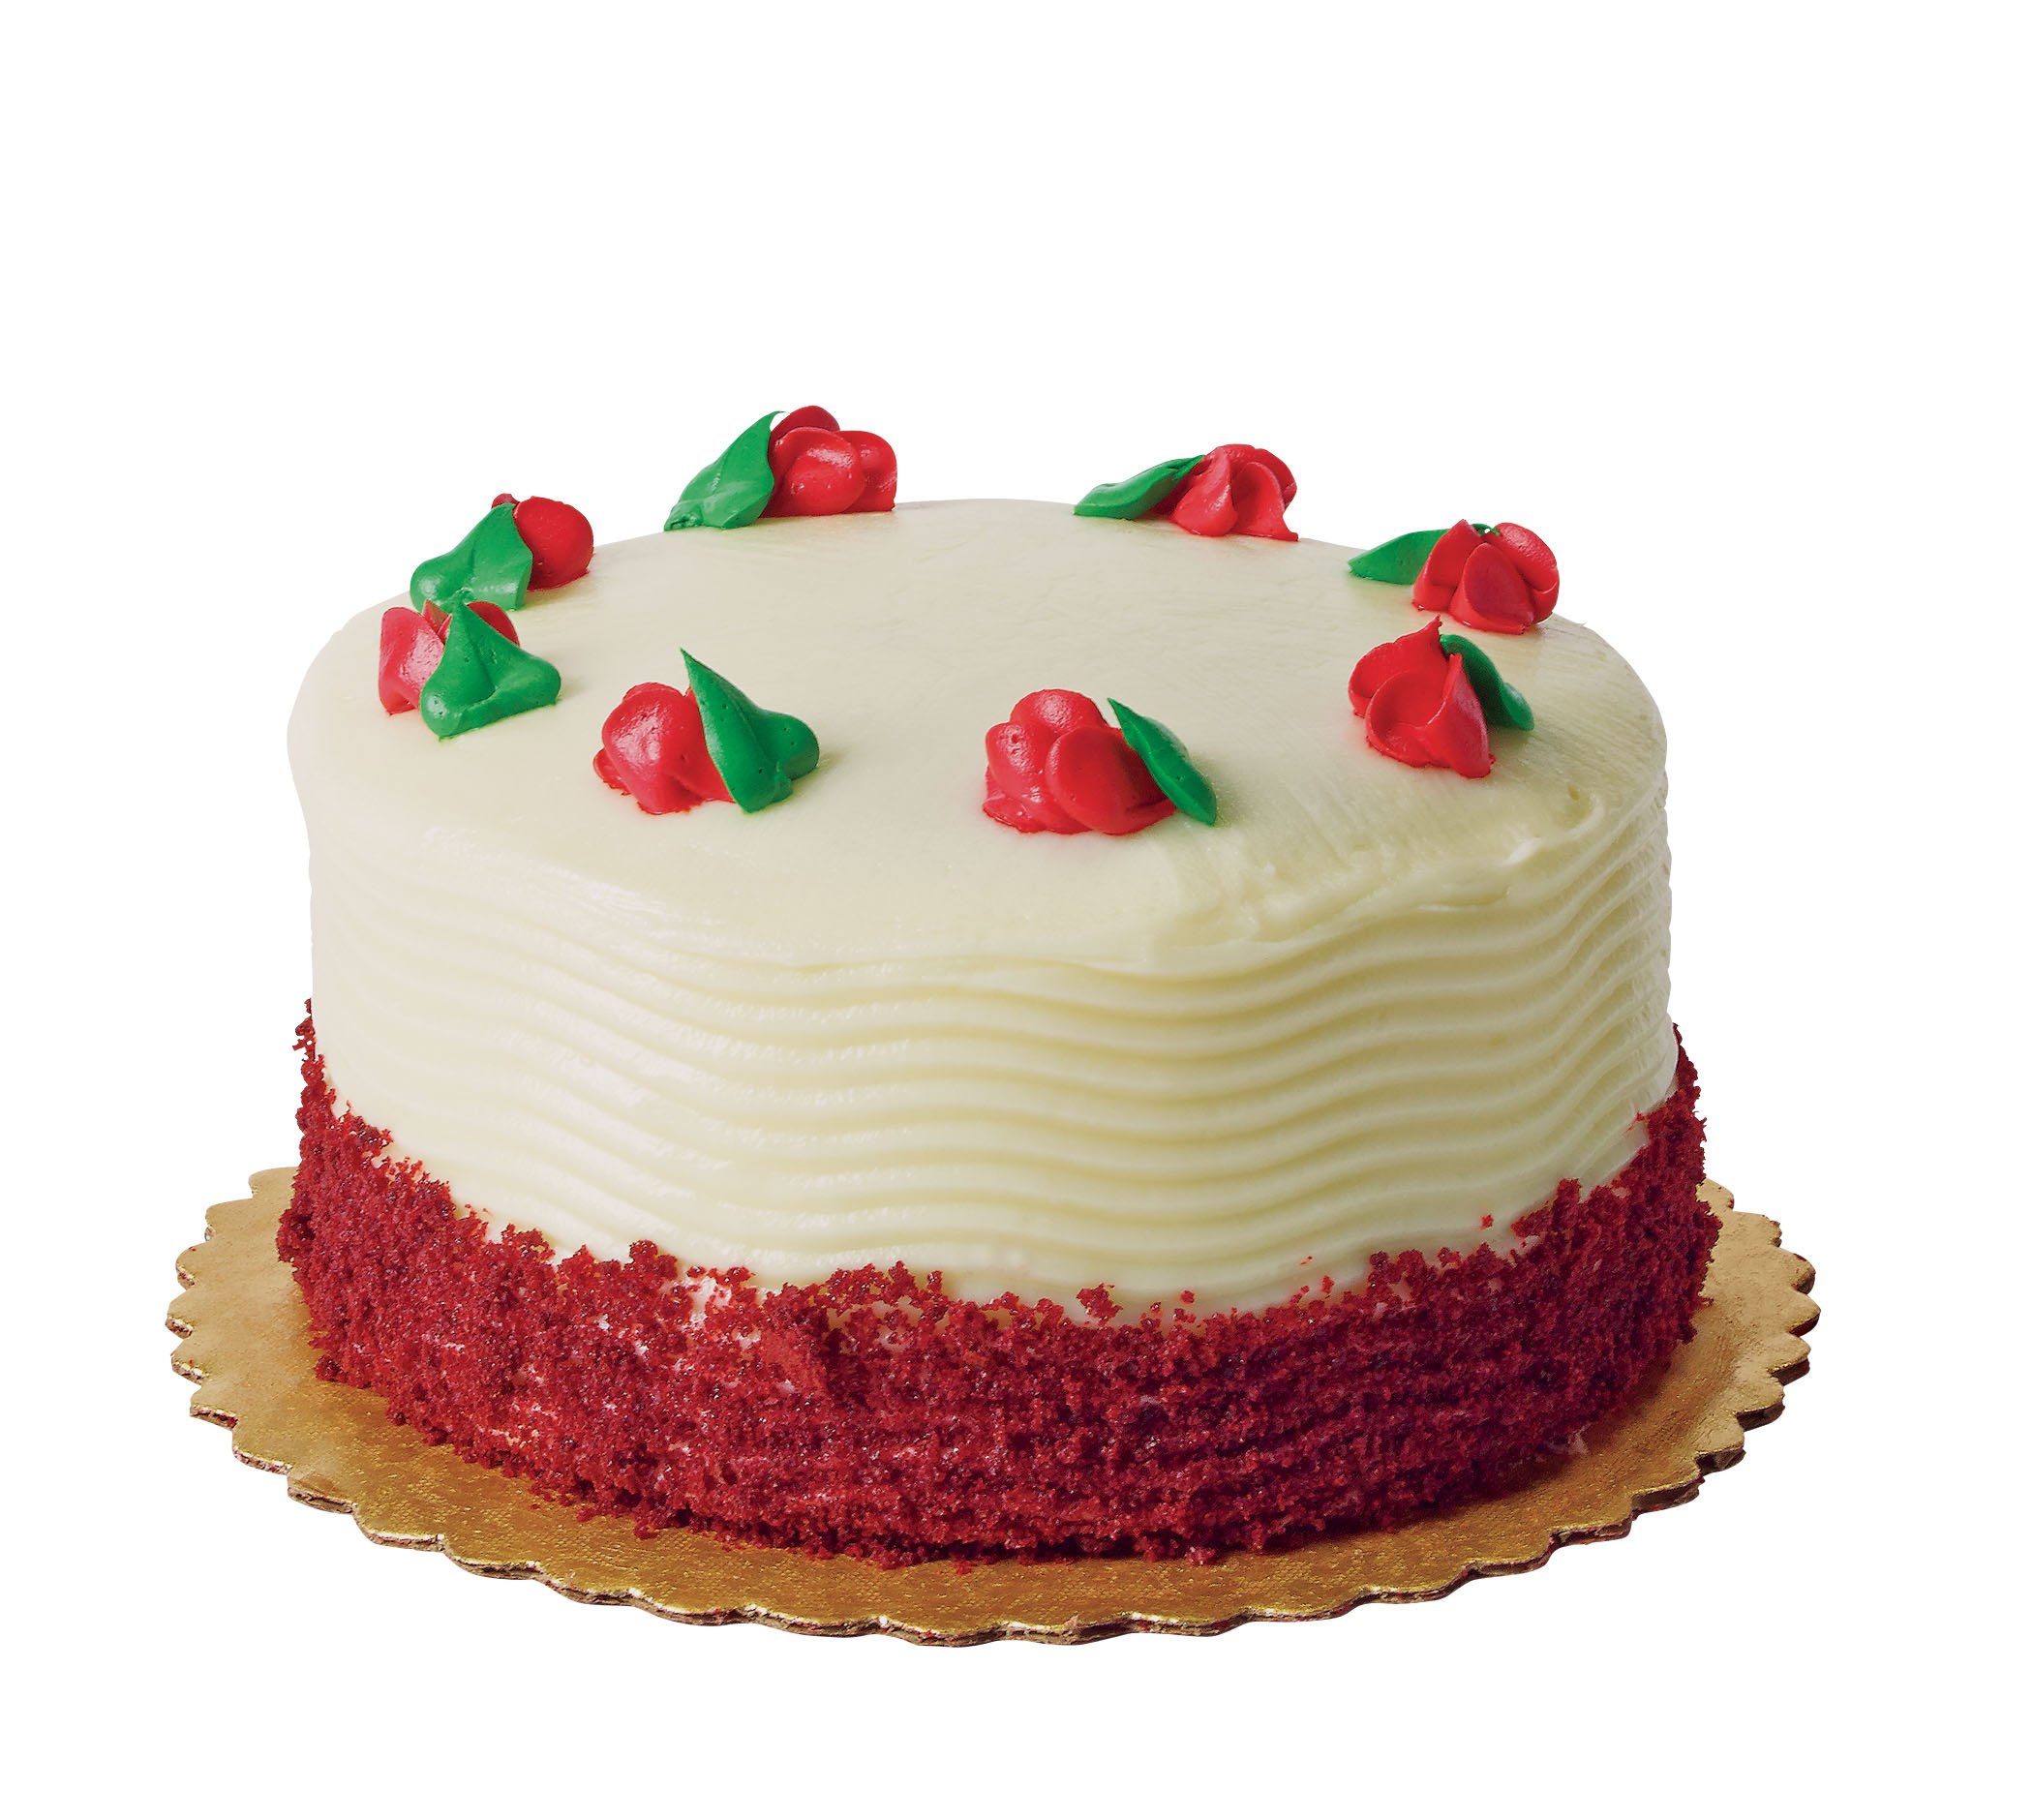 H E B Bakery Sensational 2 Layer Red Velvet Cake Shop Standard Cakes At H E B